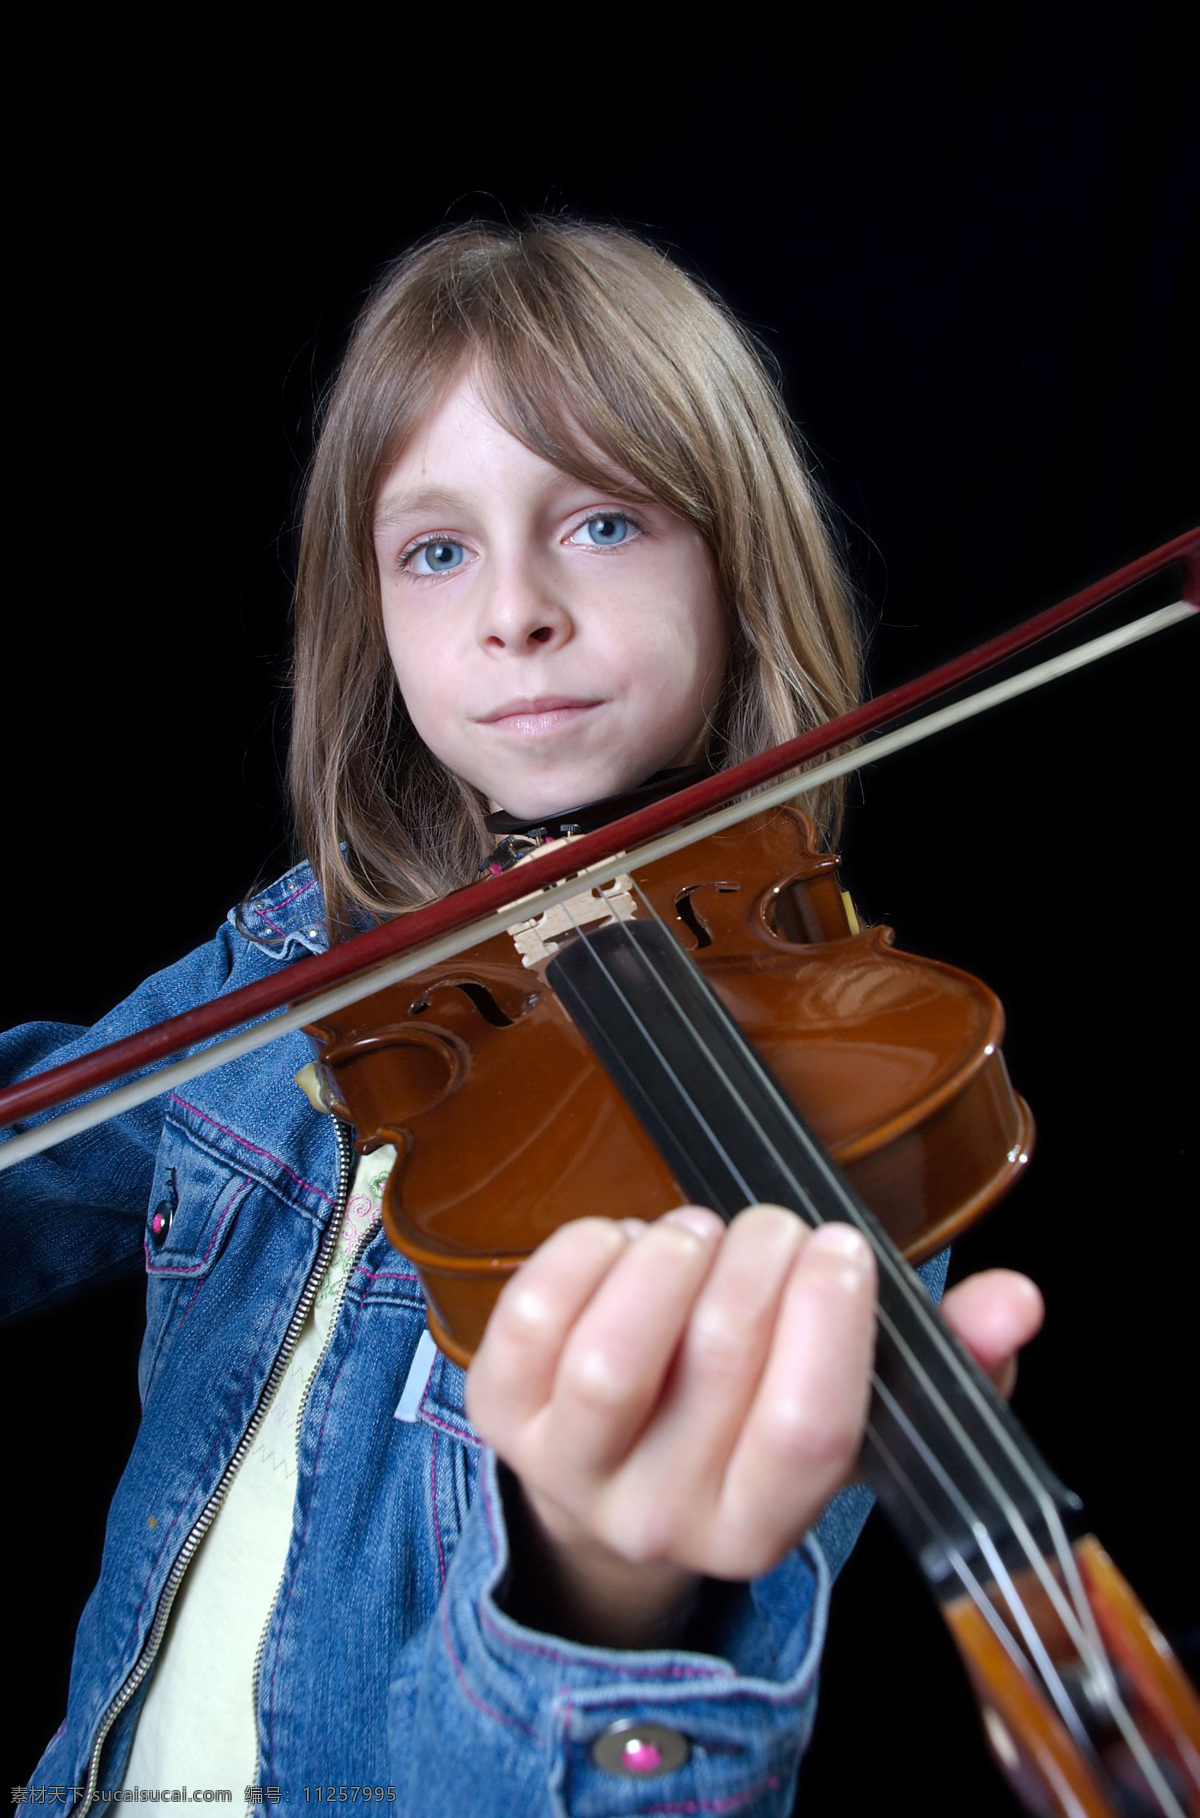 小提琴女孩子 音乐 艺术 乐器 弦乐器 小提琴 文化艺术 舞蹈音乐 摄影图库